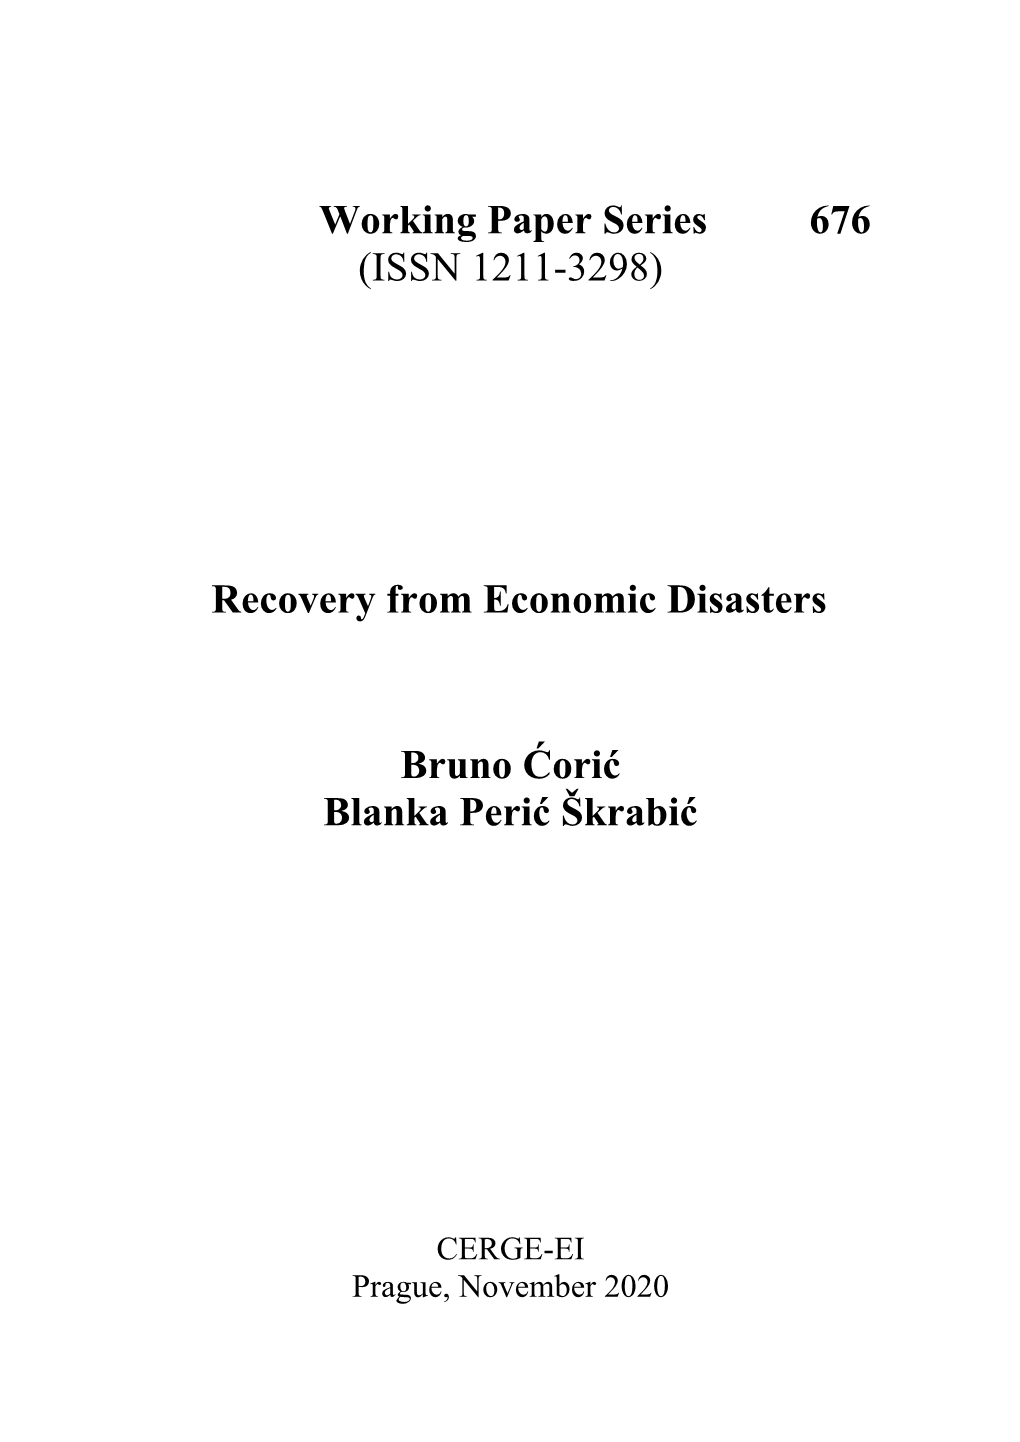 Recovery from Economic Disasters Bruno Ćorić Blanka Perić Škrabić